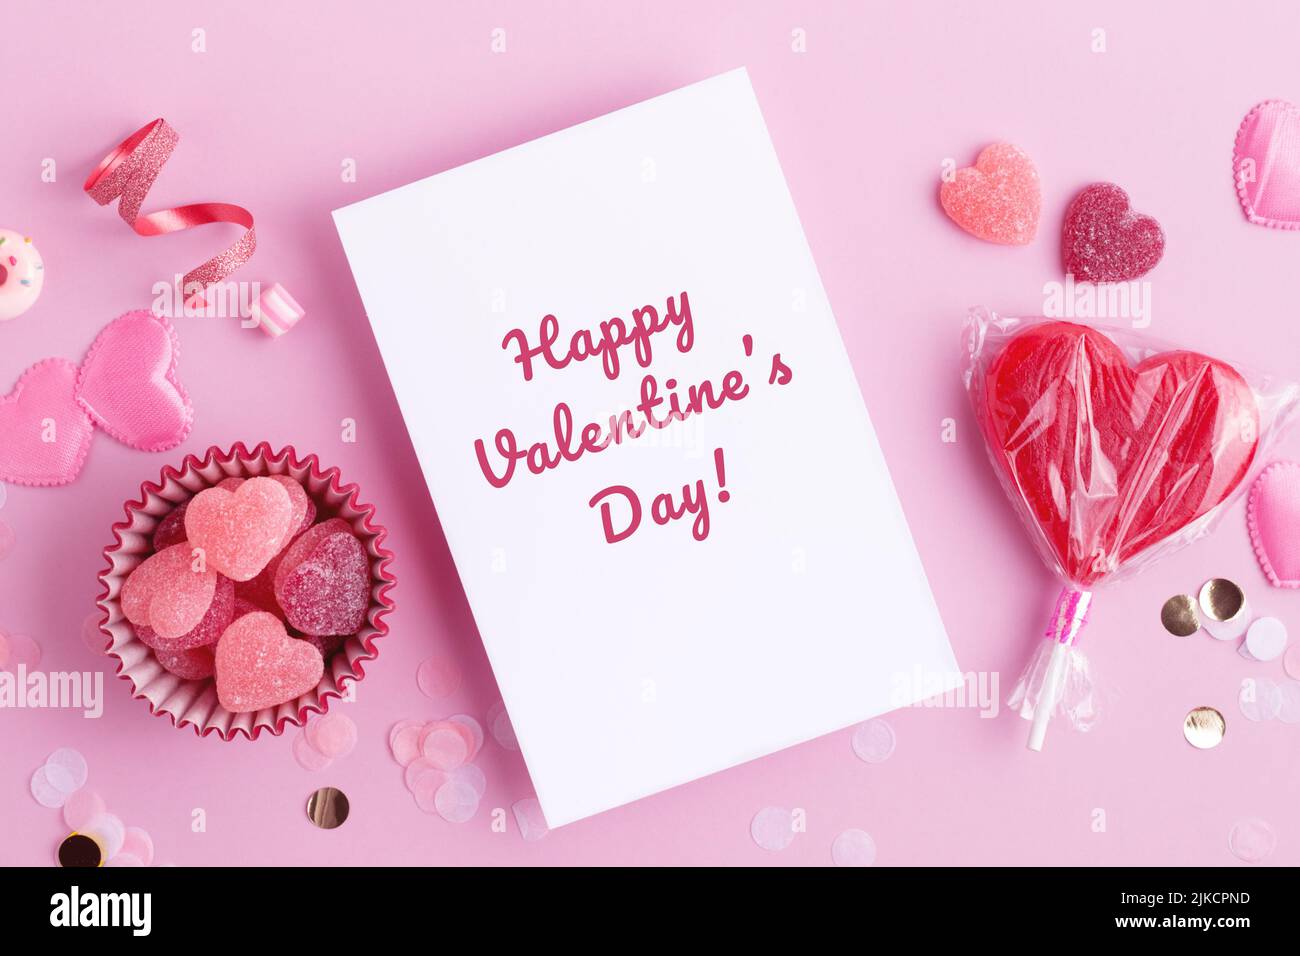 Feliz día de San Valentín Hermosa tarjeta de felicitación con corazones dulces y confeti. Rojo y los colores rosados, el plano ponen con las decoraciones del caramelo del amor del día de fiesta. Foto de stock